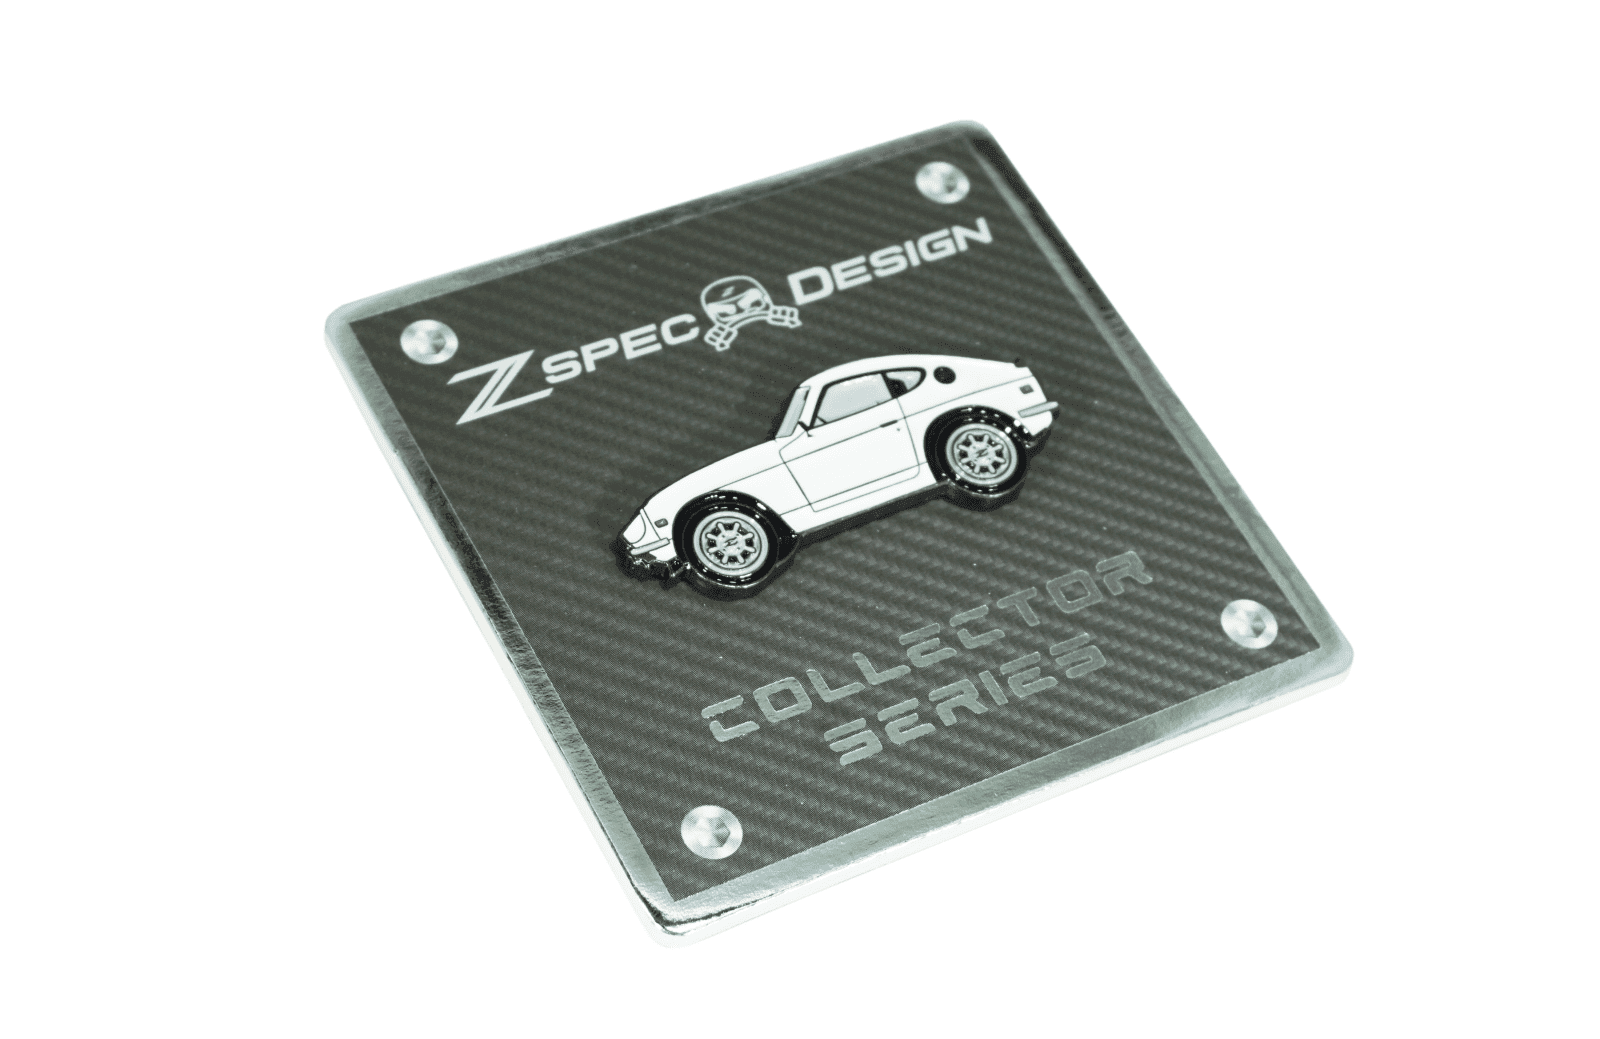 ZSPEC Datsun S30 (240z/260z/280z) -Tribute Lapel / Hat Pin Gift Holiday Man Cave Garage Art Men Man Woman Car Nut Enthusiast L24 L26 L28 L28ET Nissan L-Series sports race car